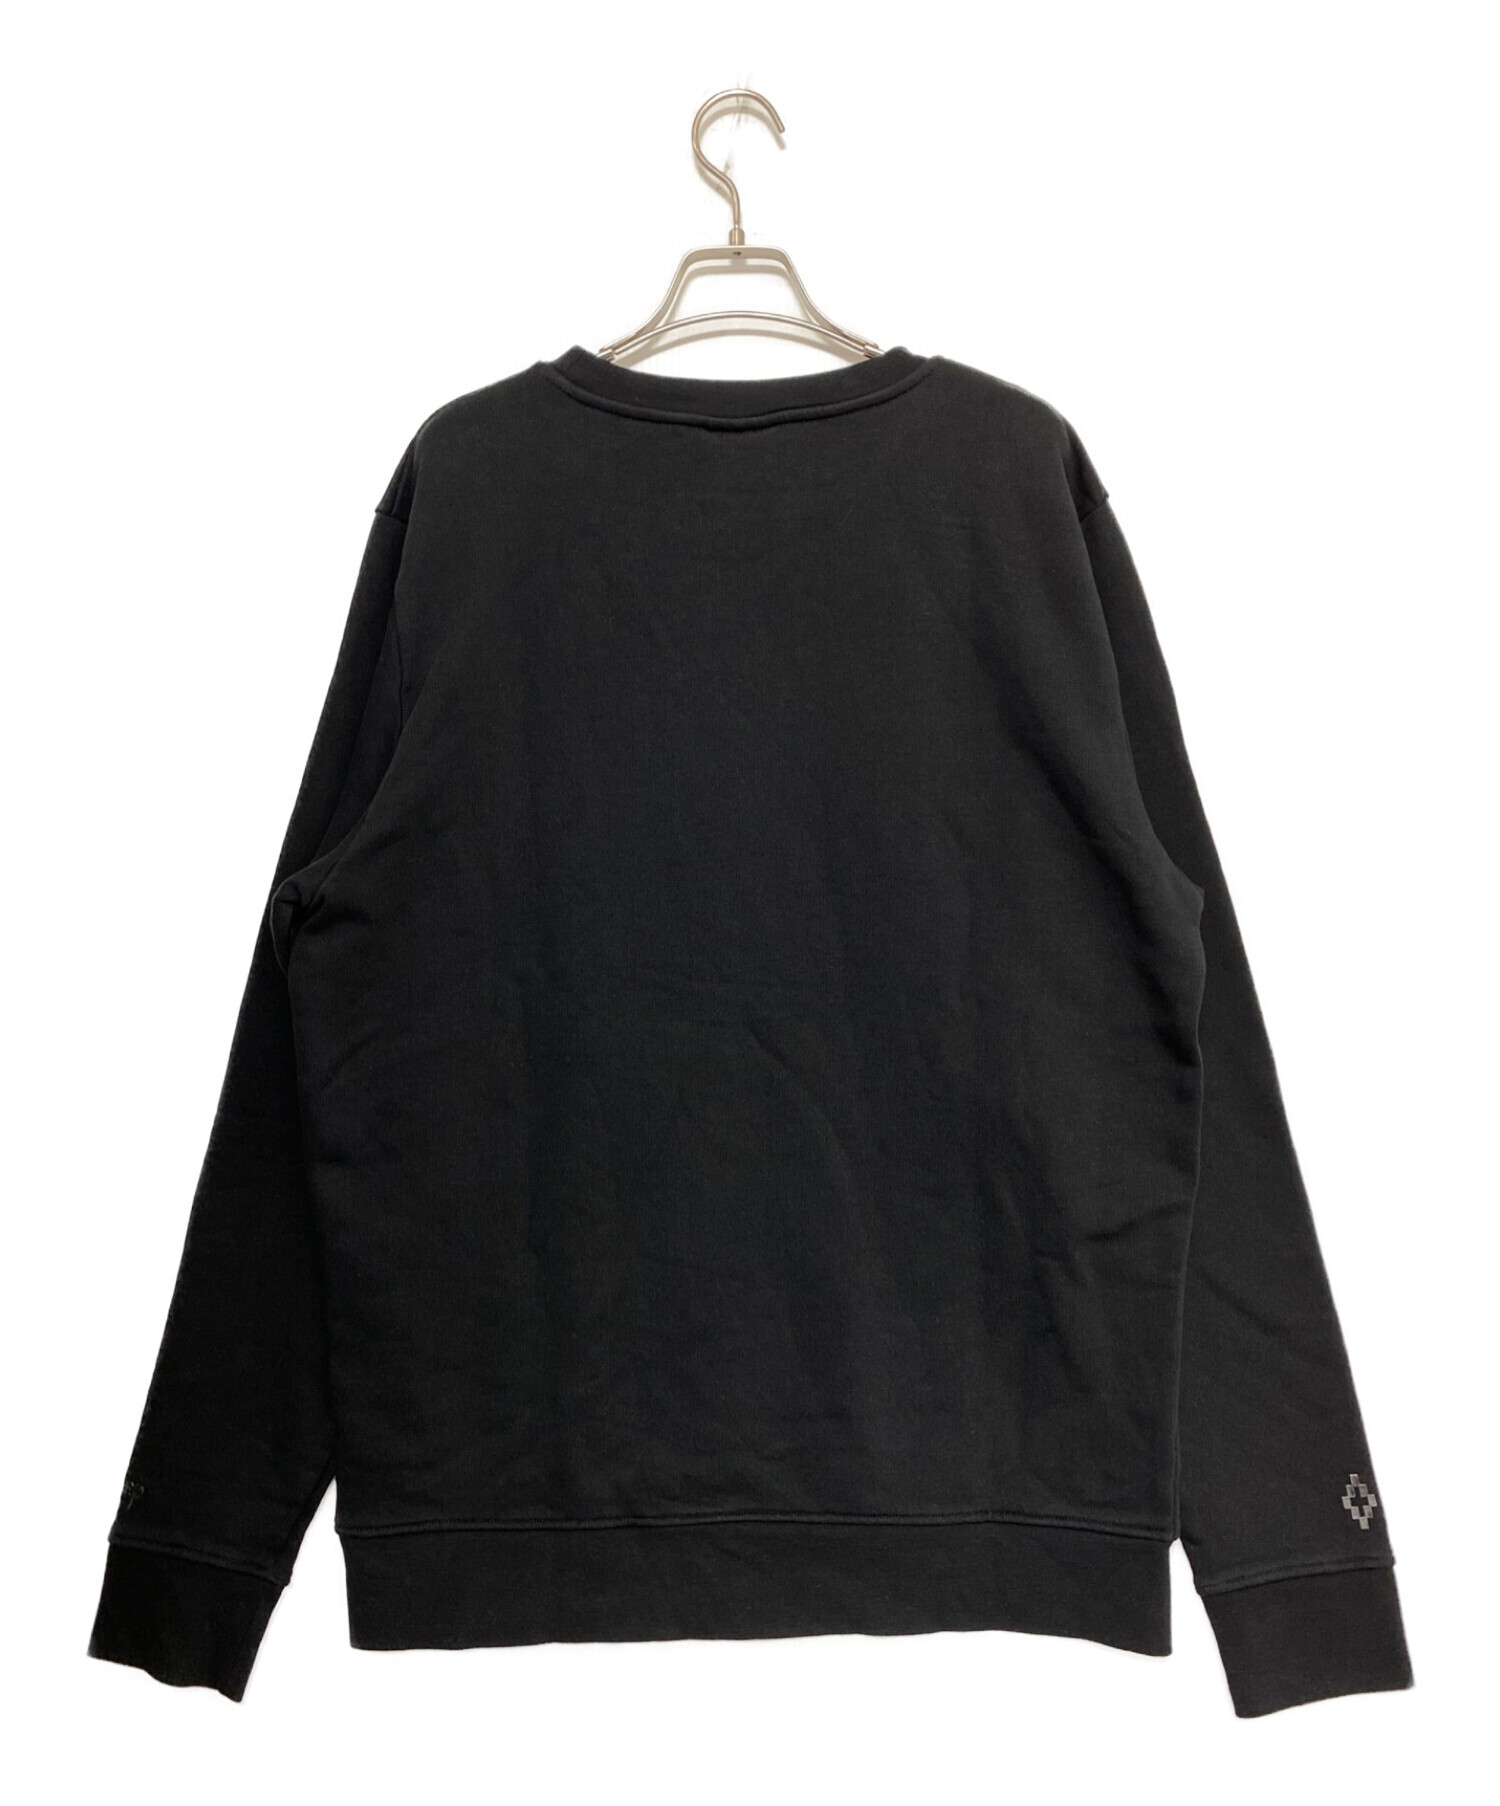 MARCELO BURLON (マルセロ バーロン) クルーネックスウェットシャツ ブラック サイズ:M 未使用品